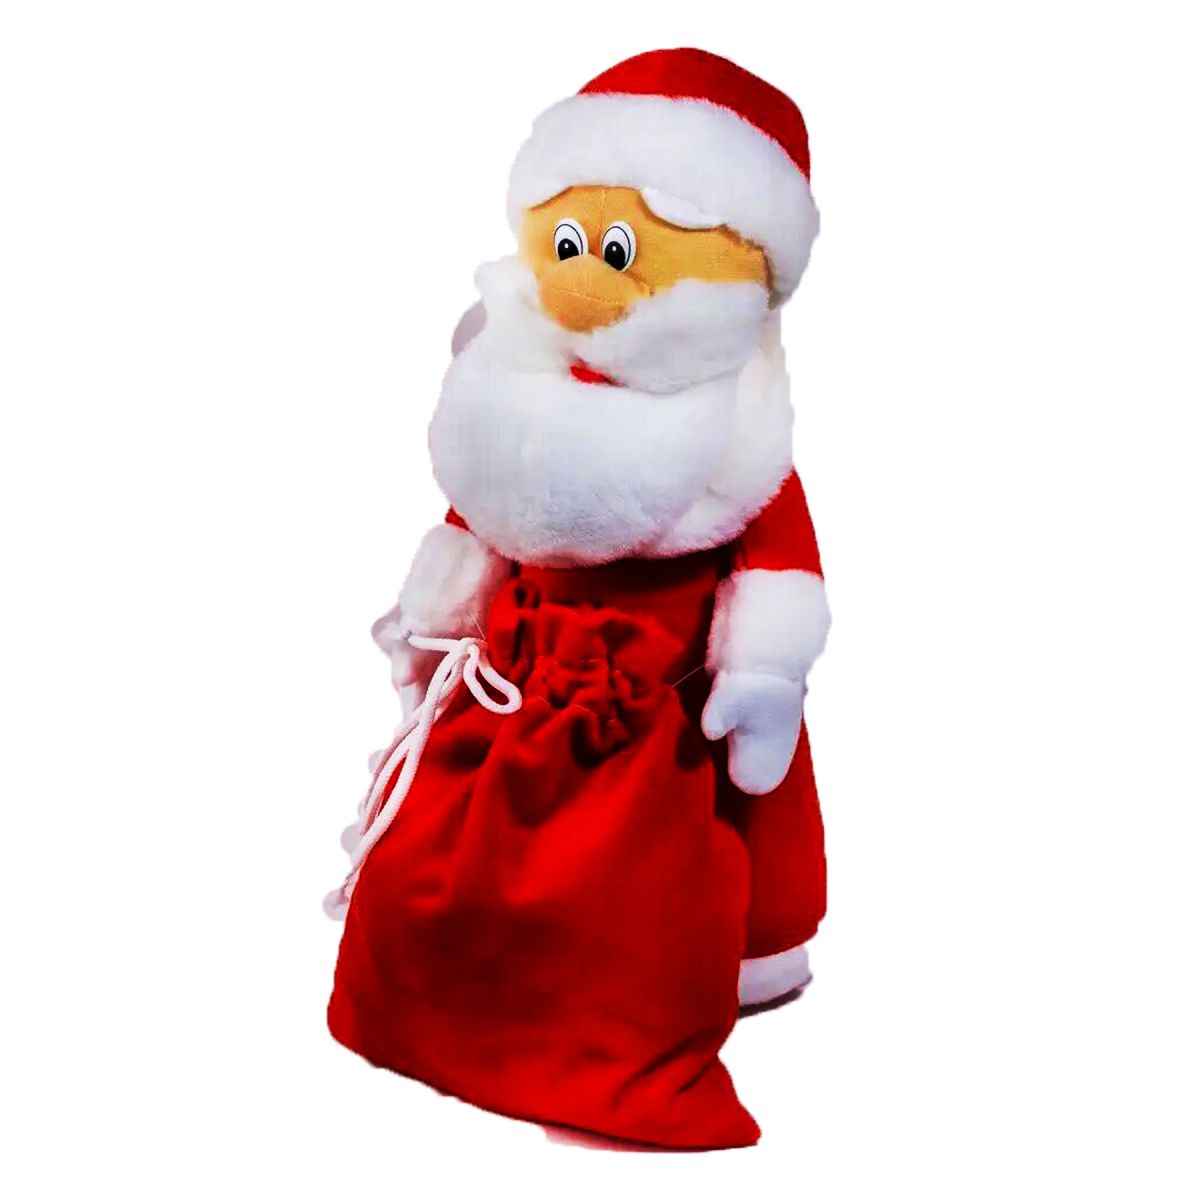 М'яка іграшка "Санта Клаус" в червоному